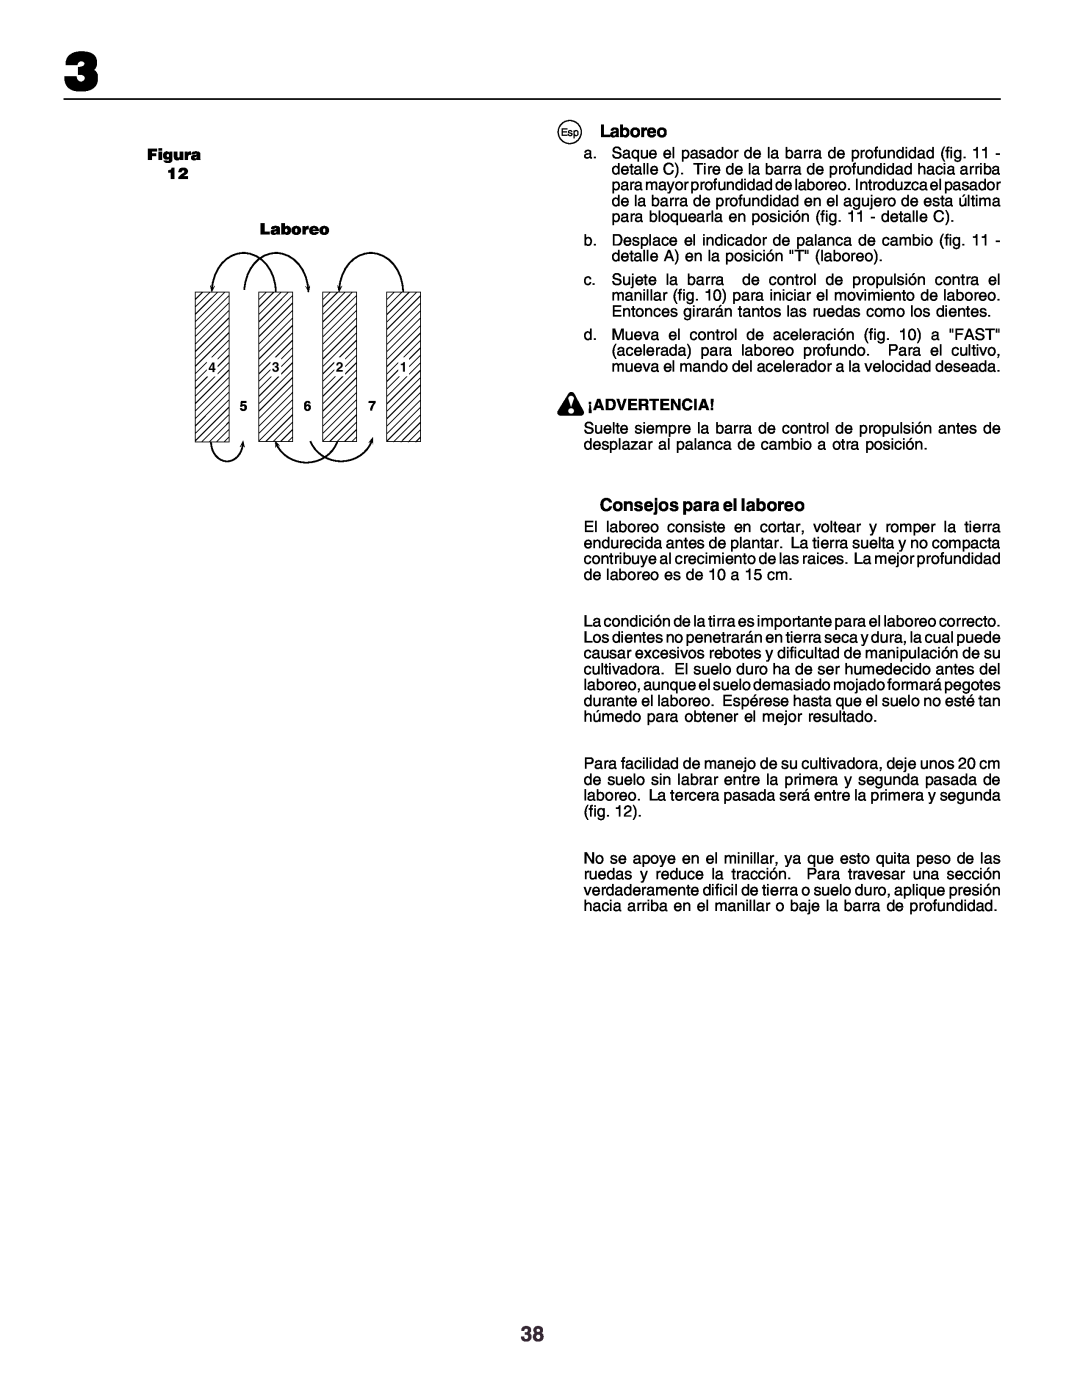 Husqvarna crt51 instruction manual Esp Laboreo, Consejos para el laboreo, Figura Laboreo, ¡Advertencia 